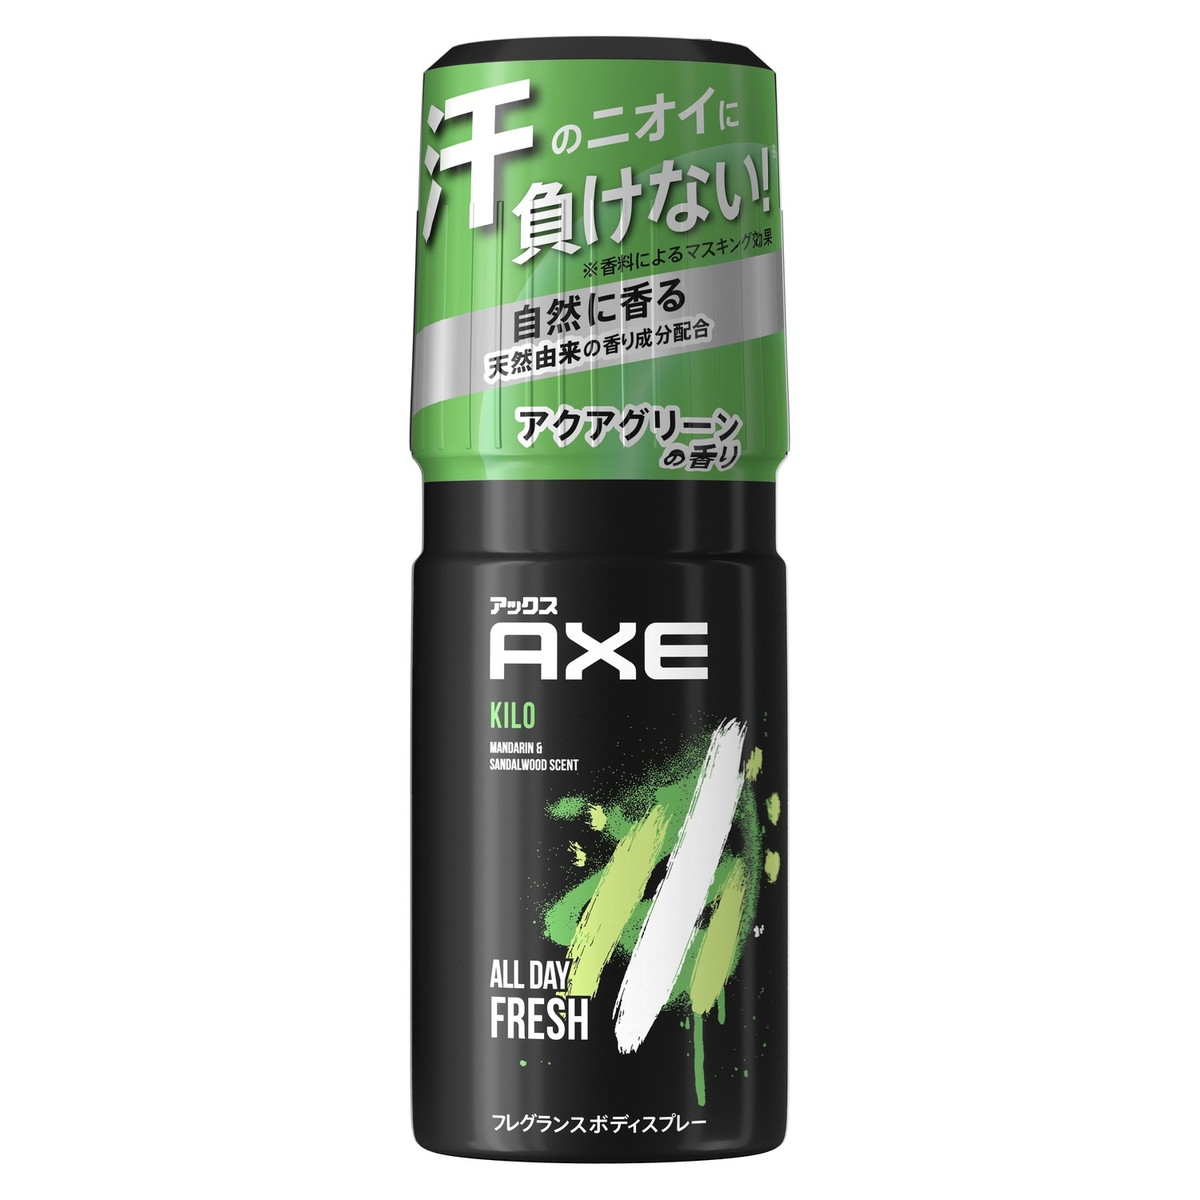 ユニリーバ AXE ( アックス ) フレグランスボディスプレー キロ 60g 澄んだアクアグリーンの香り ( 4902111731513 )